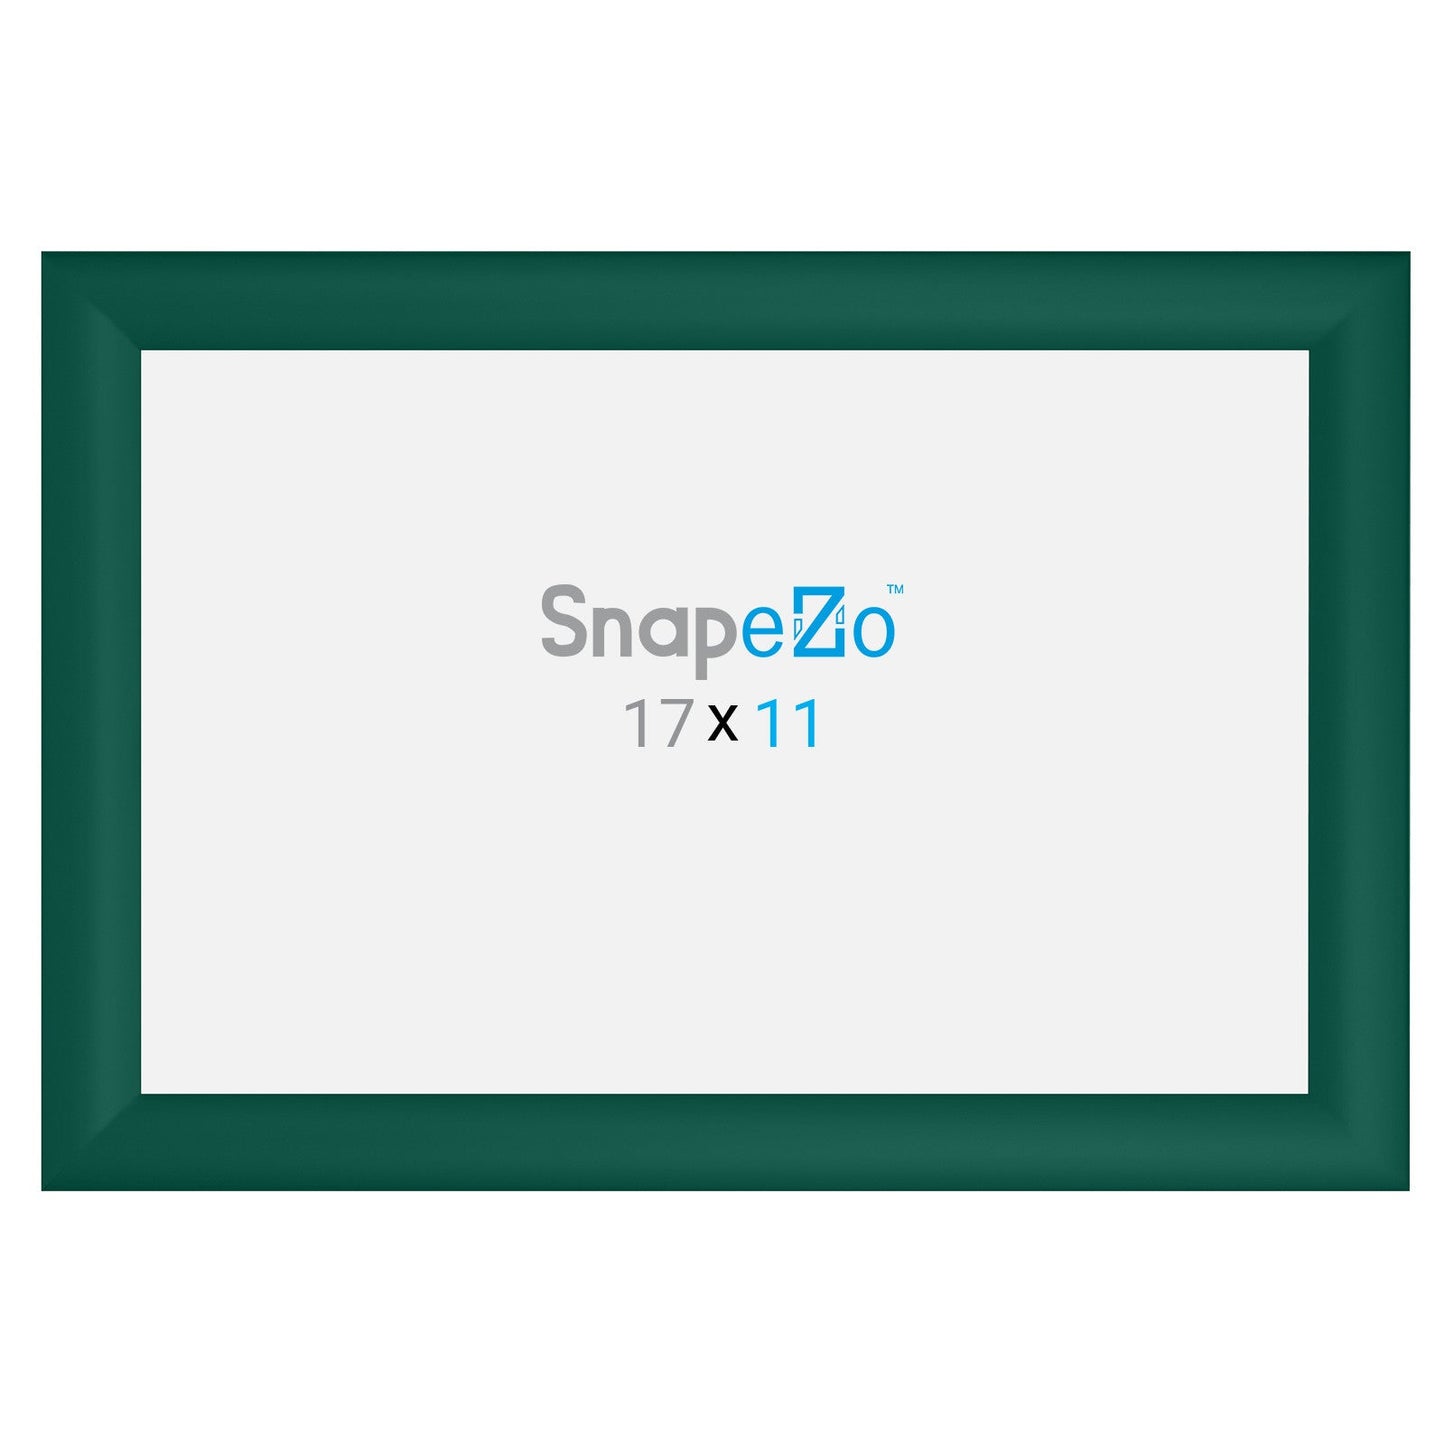 11x17 Green SnapeZo® Snap Frame - 1.2" Profile